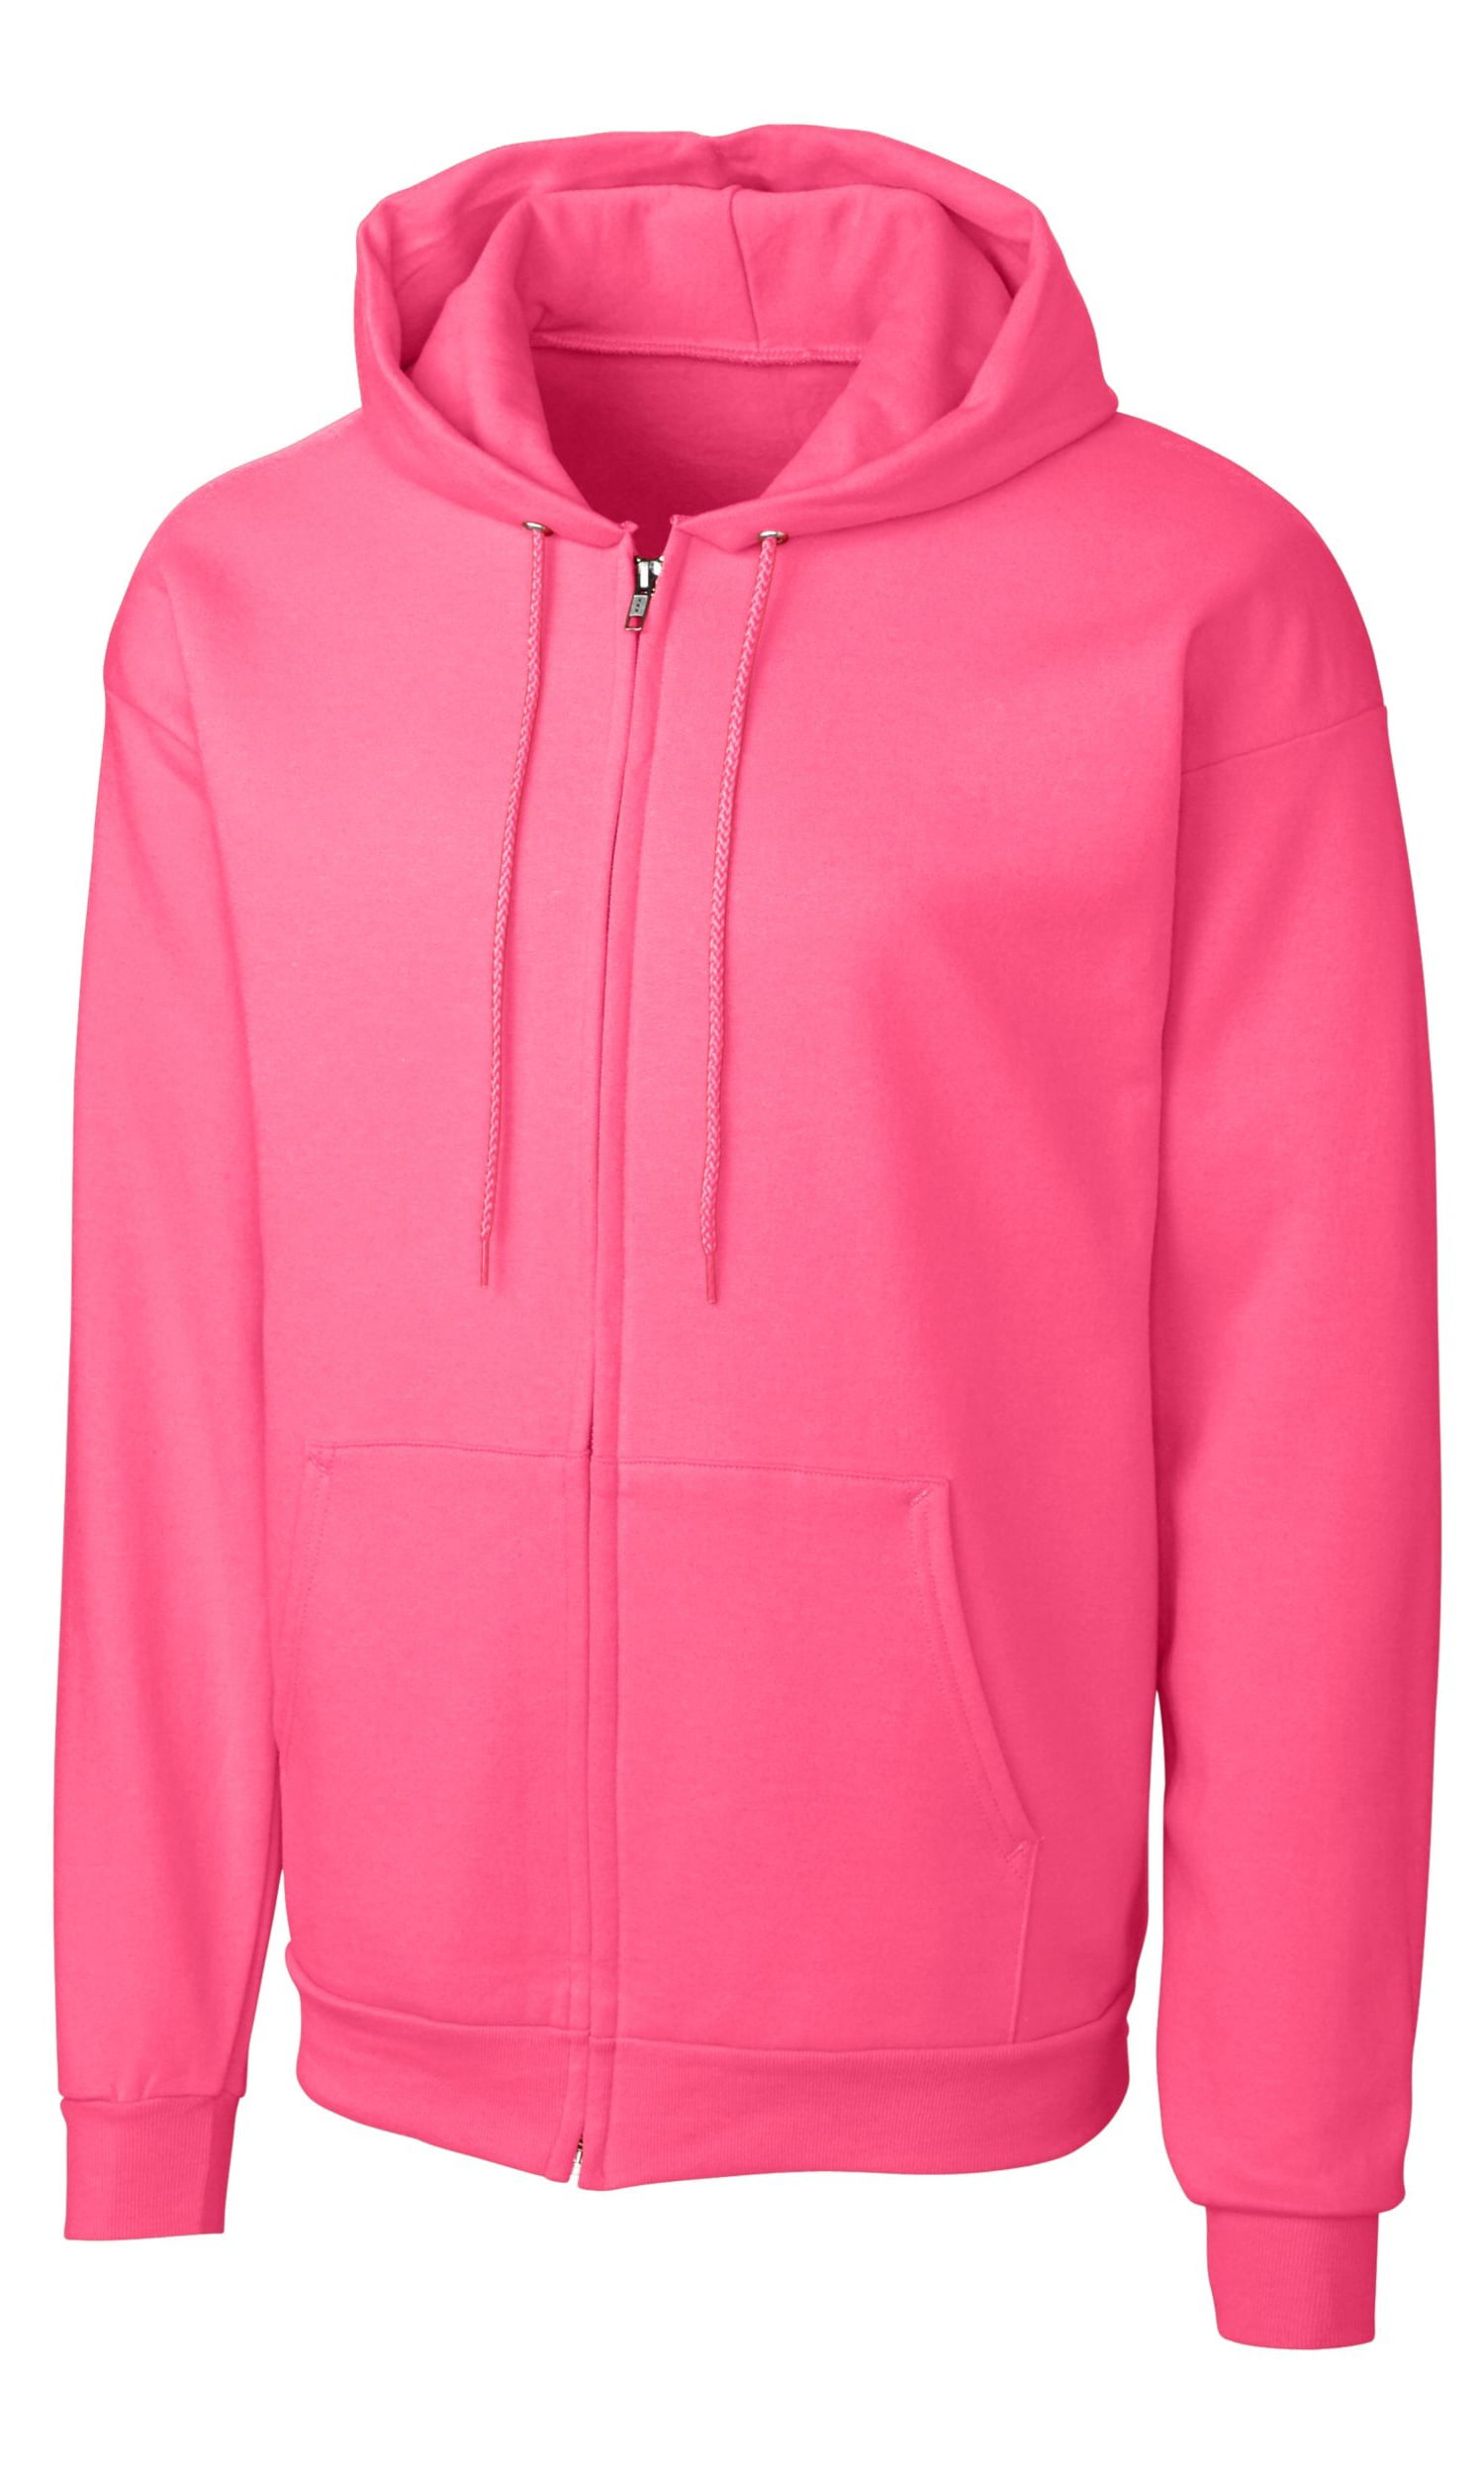 Adidas - Clique Men's Basics Fleece Full Zip Hoodie, Neon Pink - M